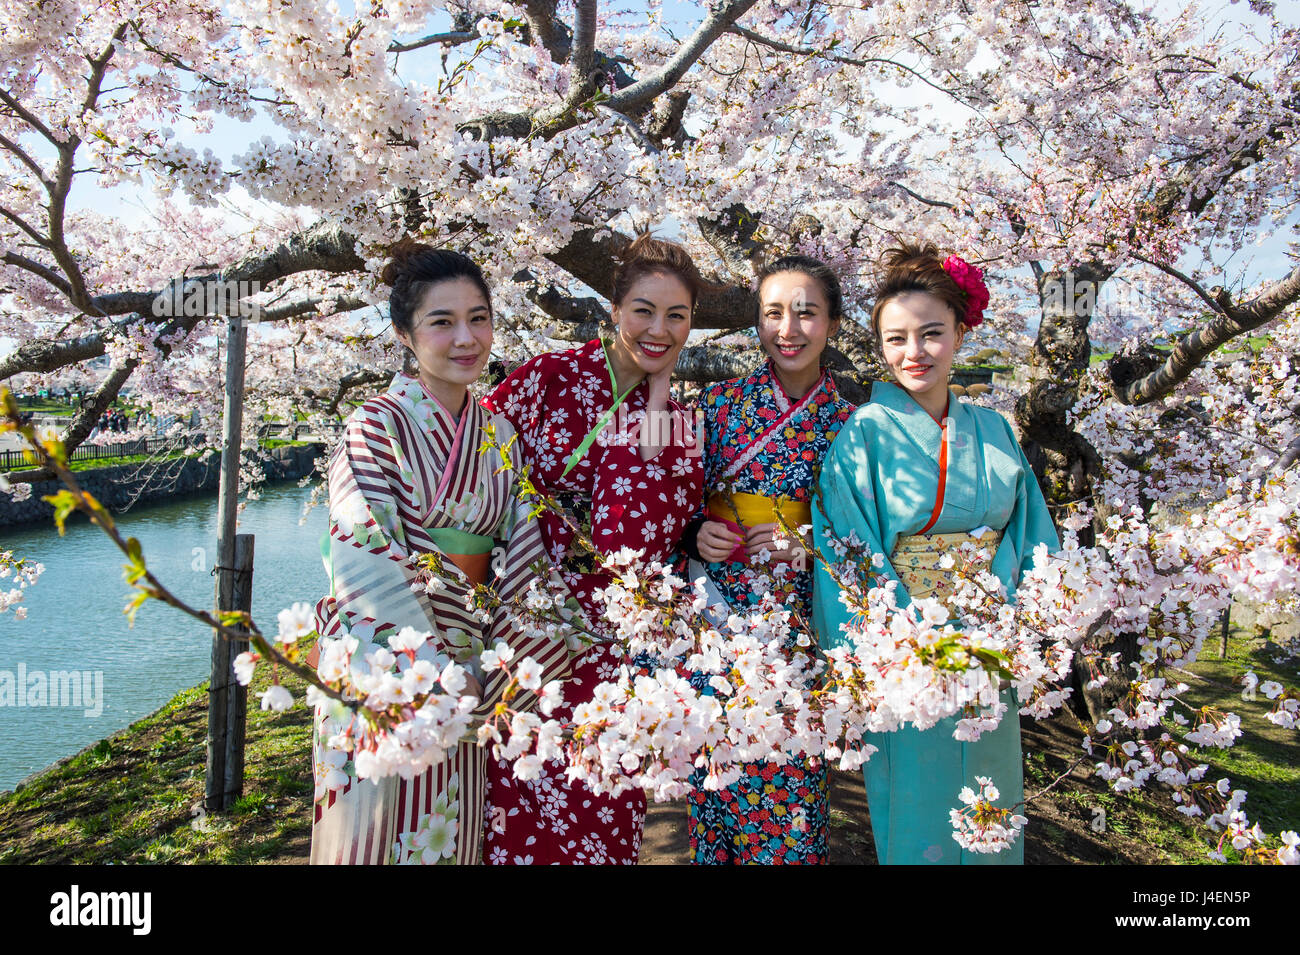 Women dressed as Geishas standing in the blossoming cherry trees, Fort Goryokaku, Hakodate, Hokkaido, Japan, Asia Stock Photo